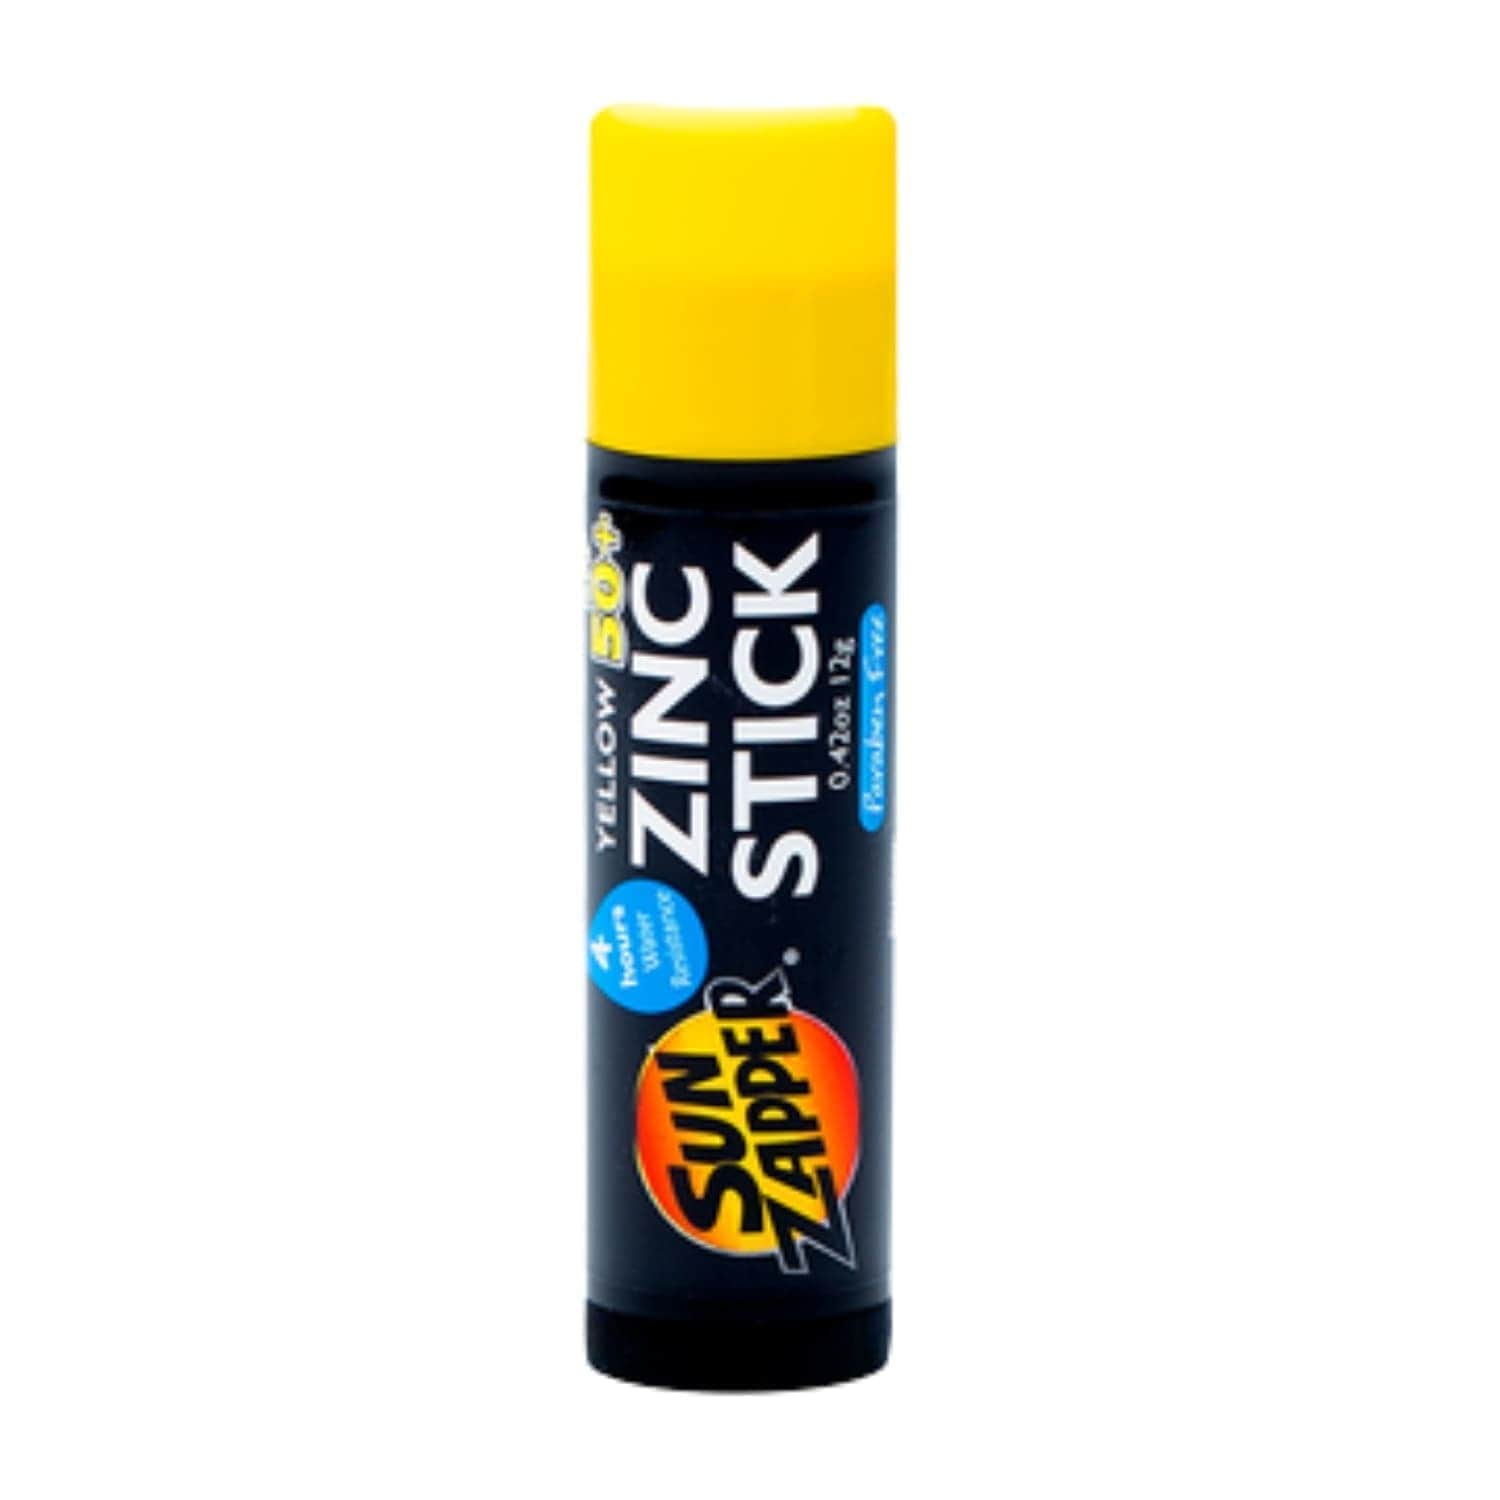 Sun Zapper Coloured SPF 50+ Zinc Stick - Yellow - 12g - Sunscreen by Sun Zapper 12g